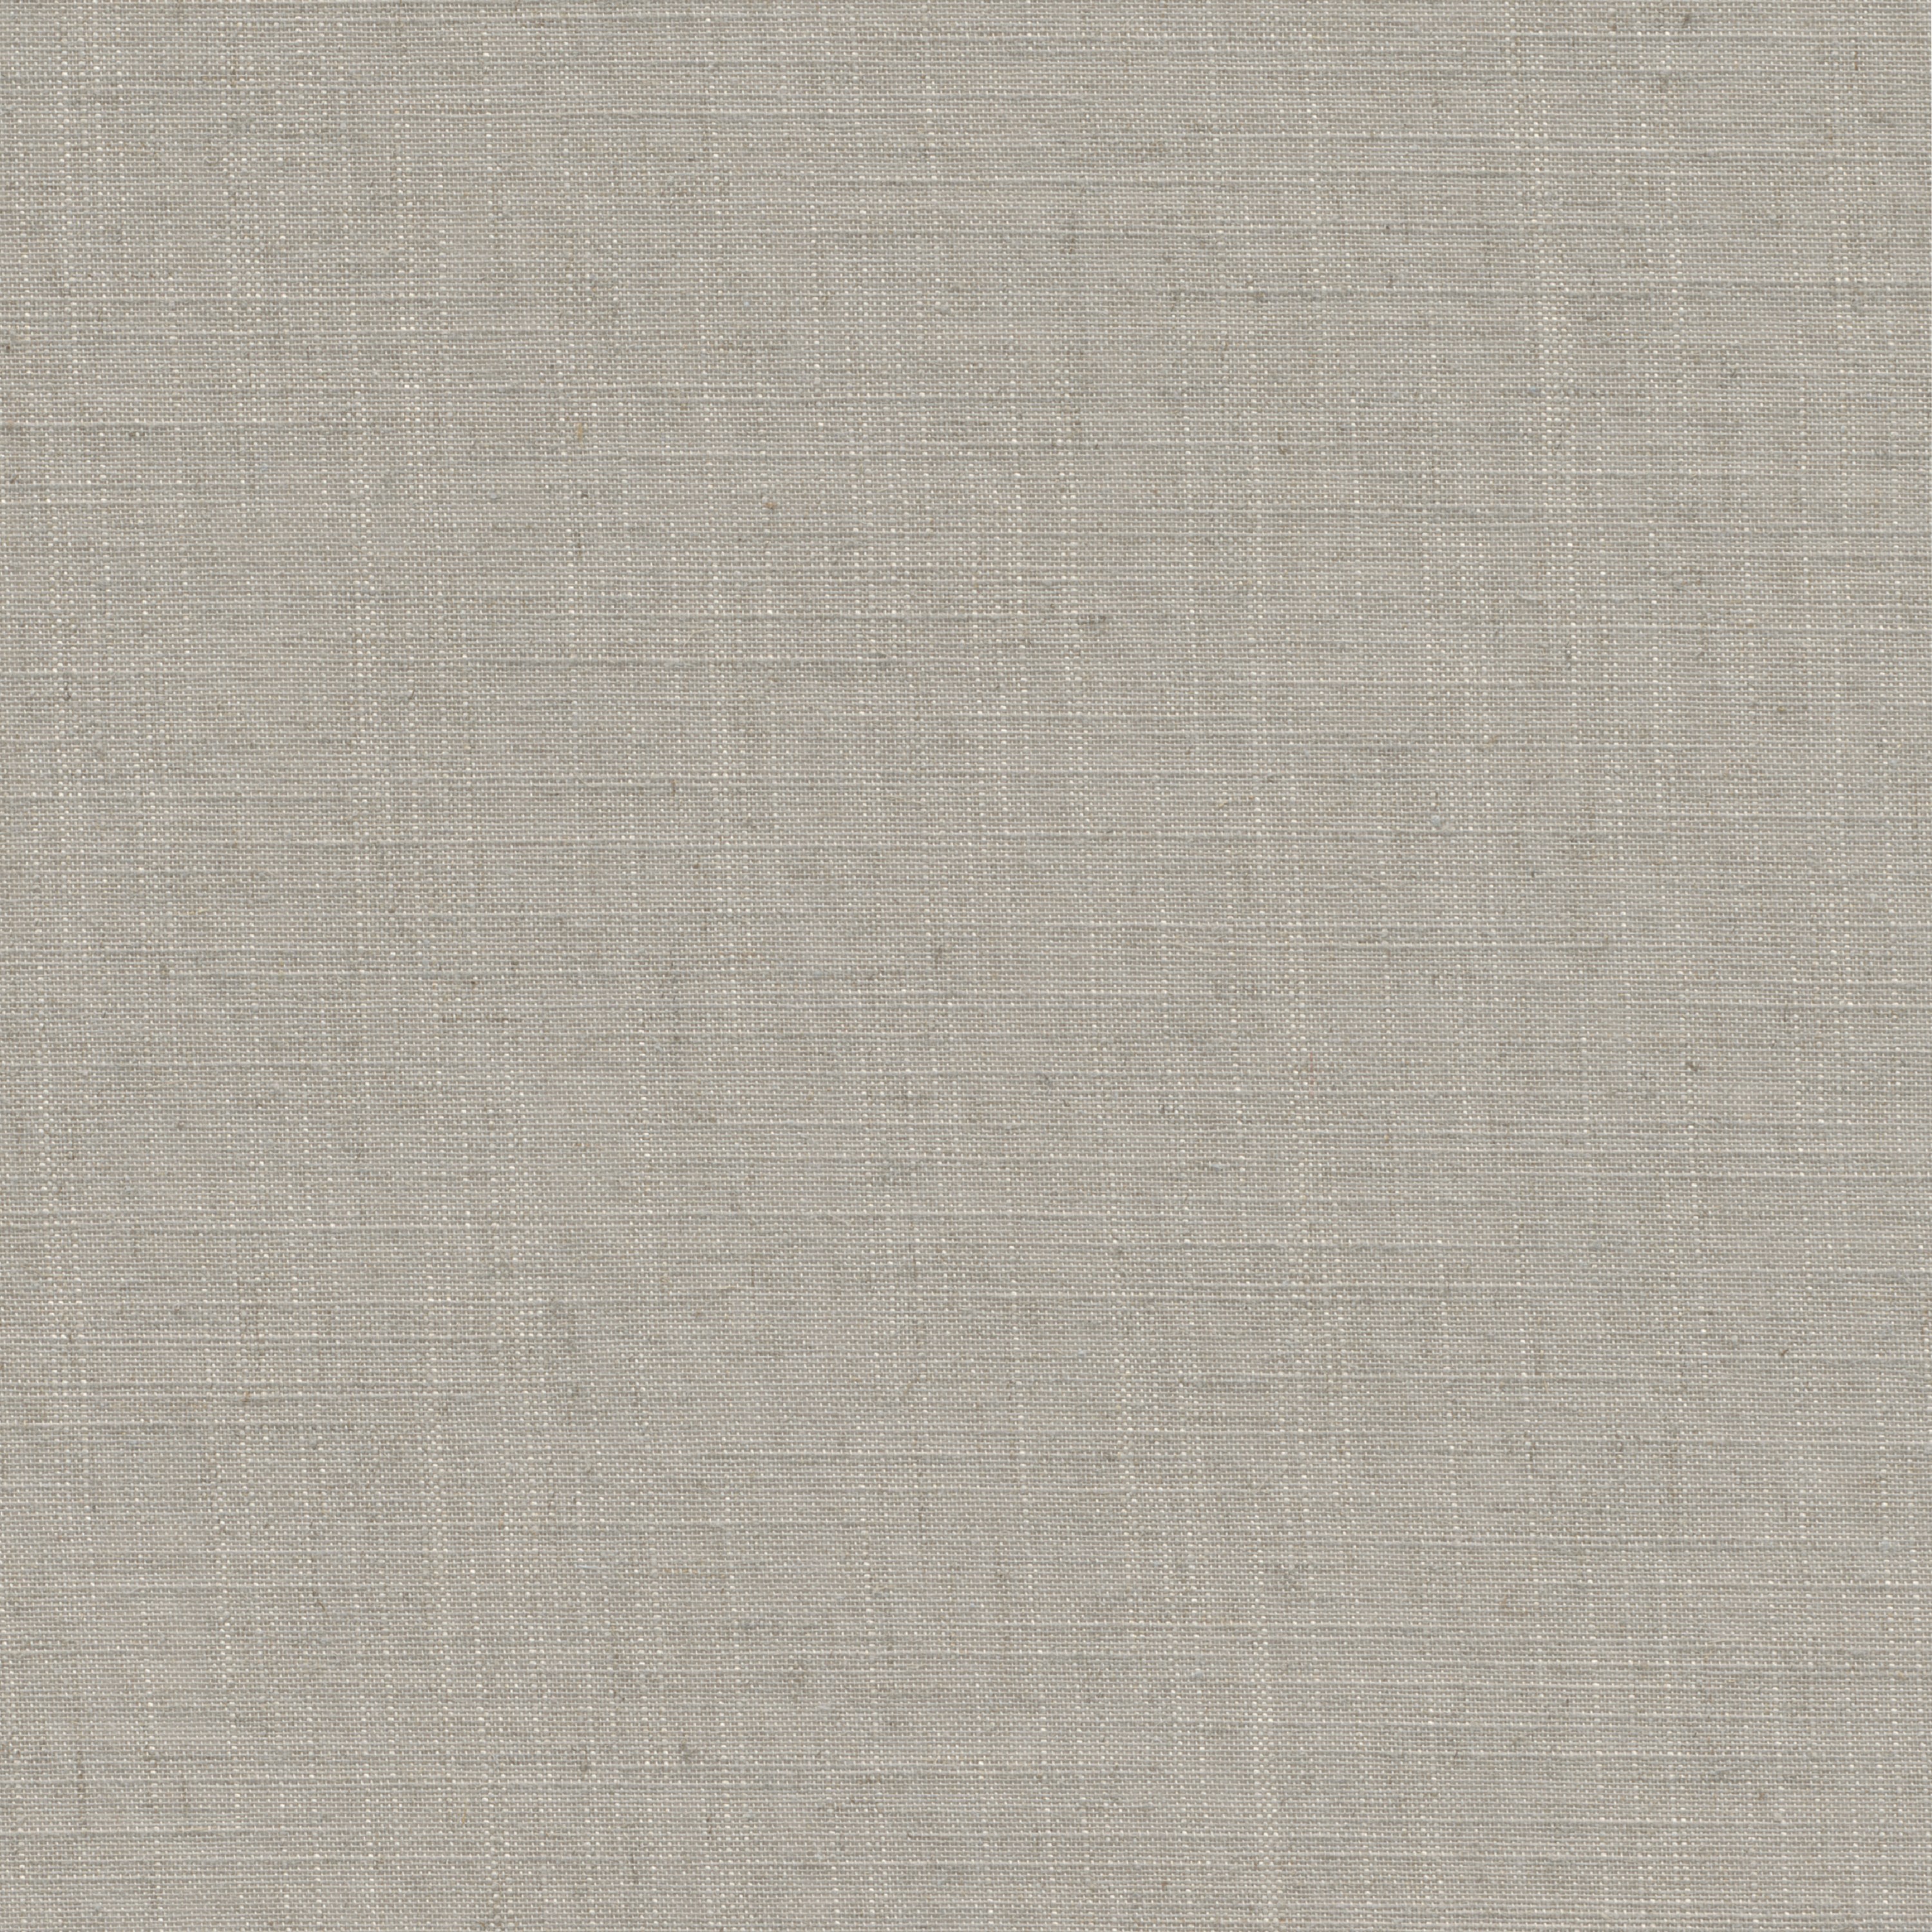 Tessuto per tende a rullo filtrante INSPIRE Brisbane beige 52 x 190 cm - 3